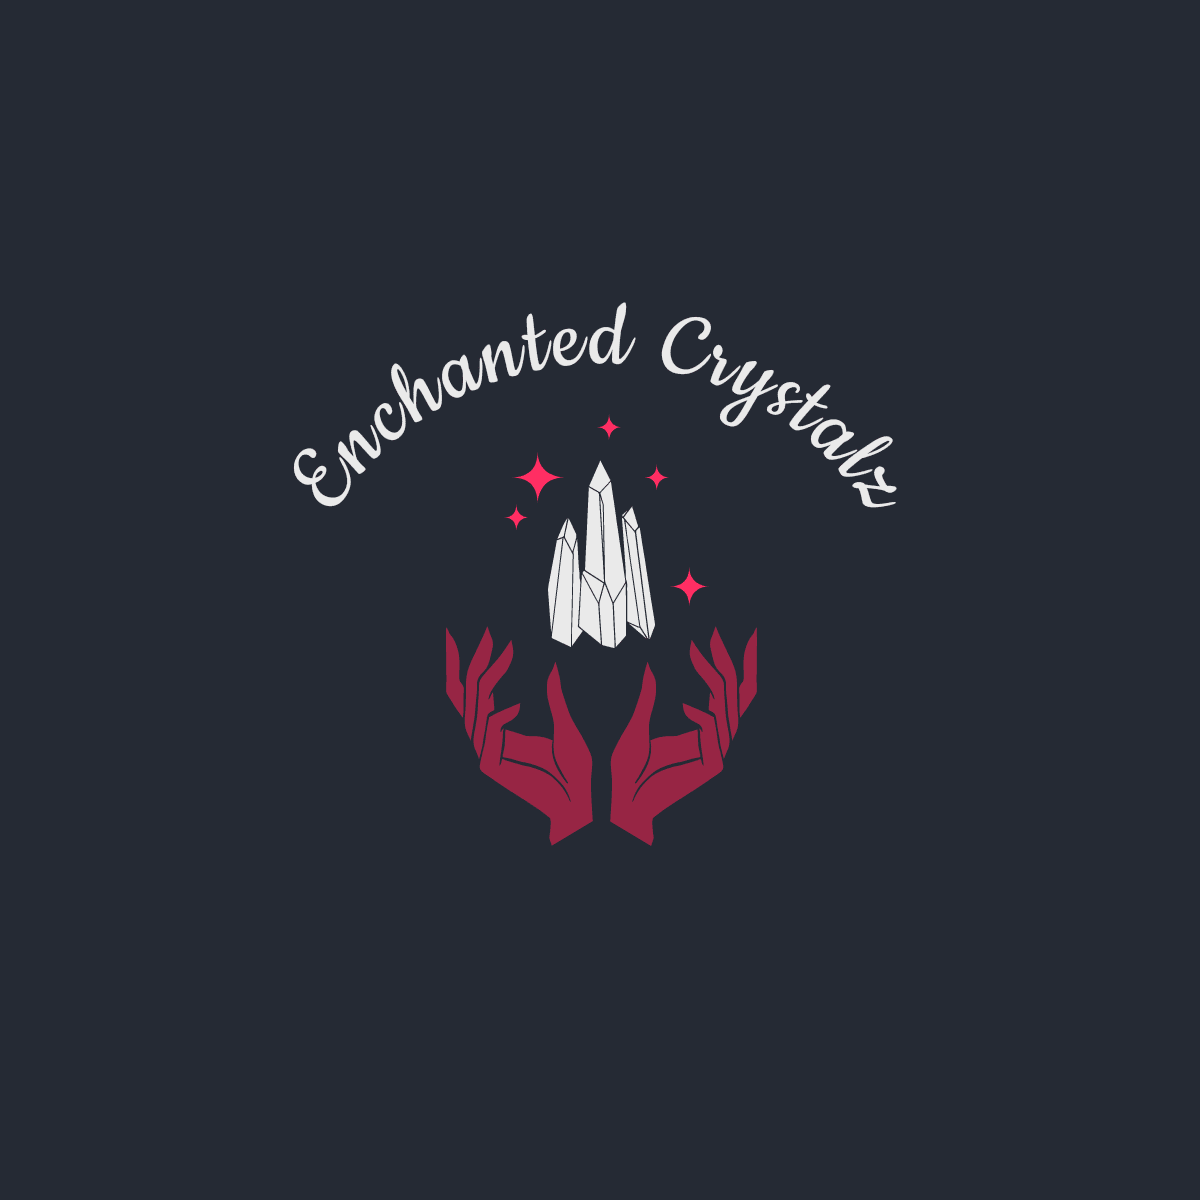 Enchanted Crystalz